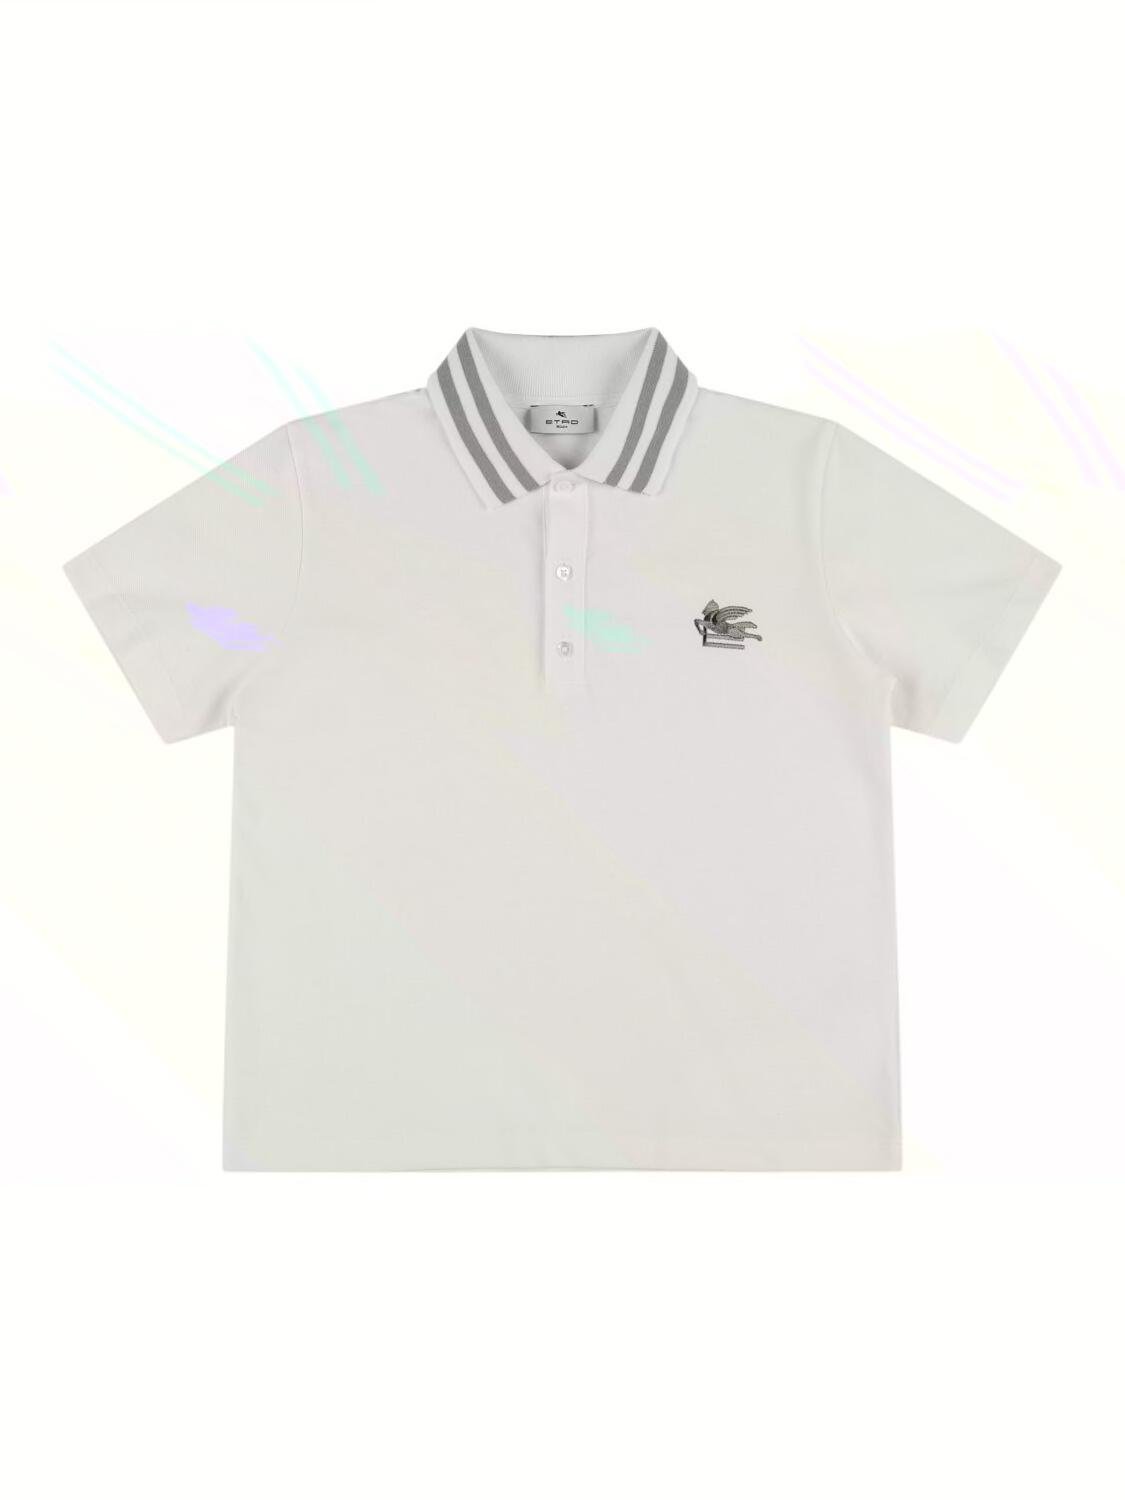 Cotton Jersey Piquet Polo Shirt by ETRO